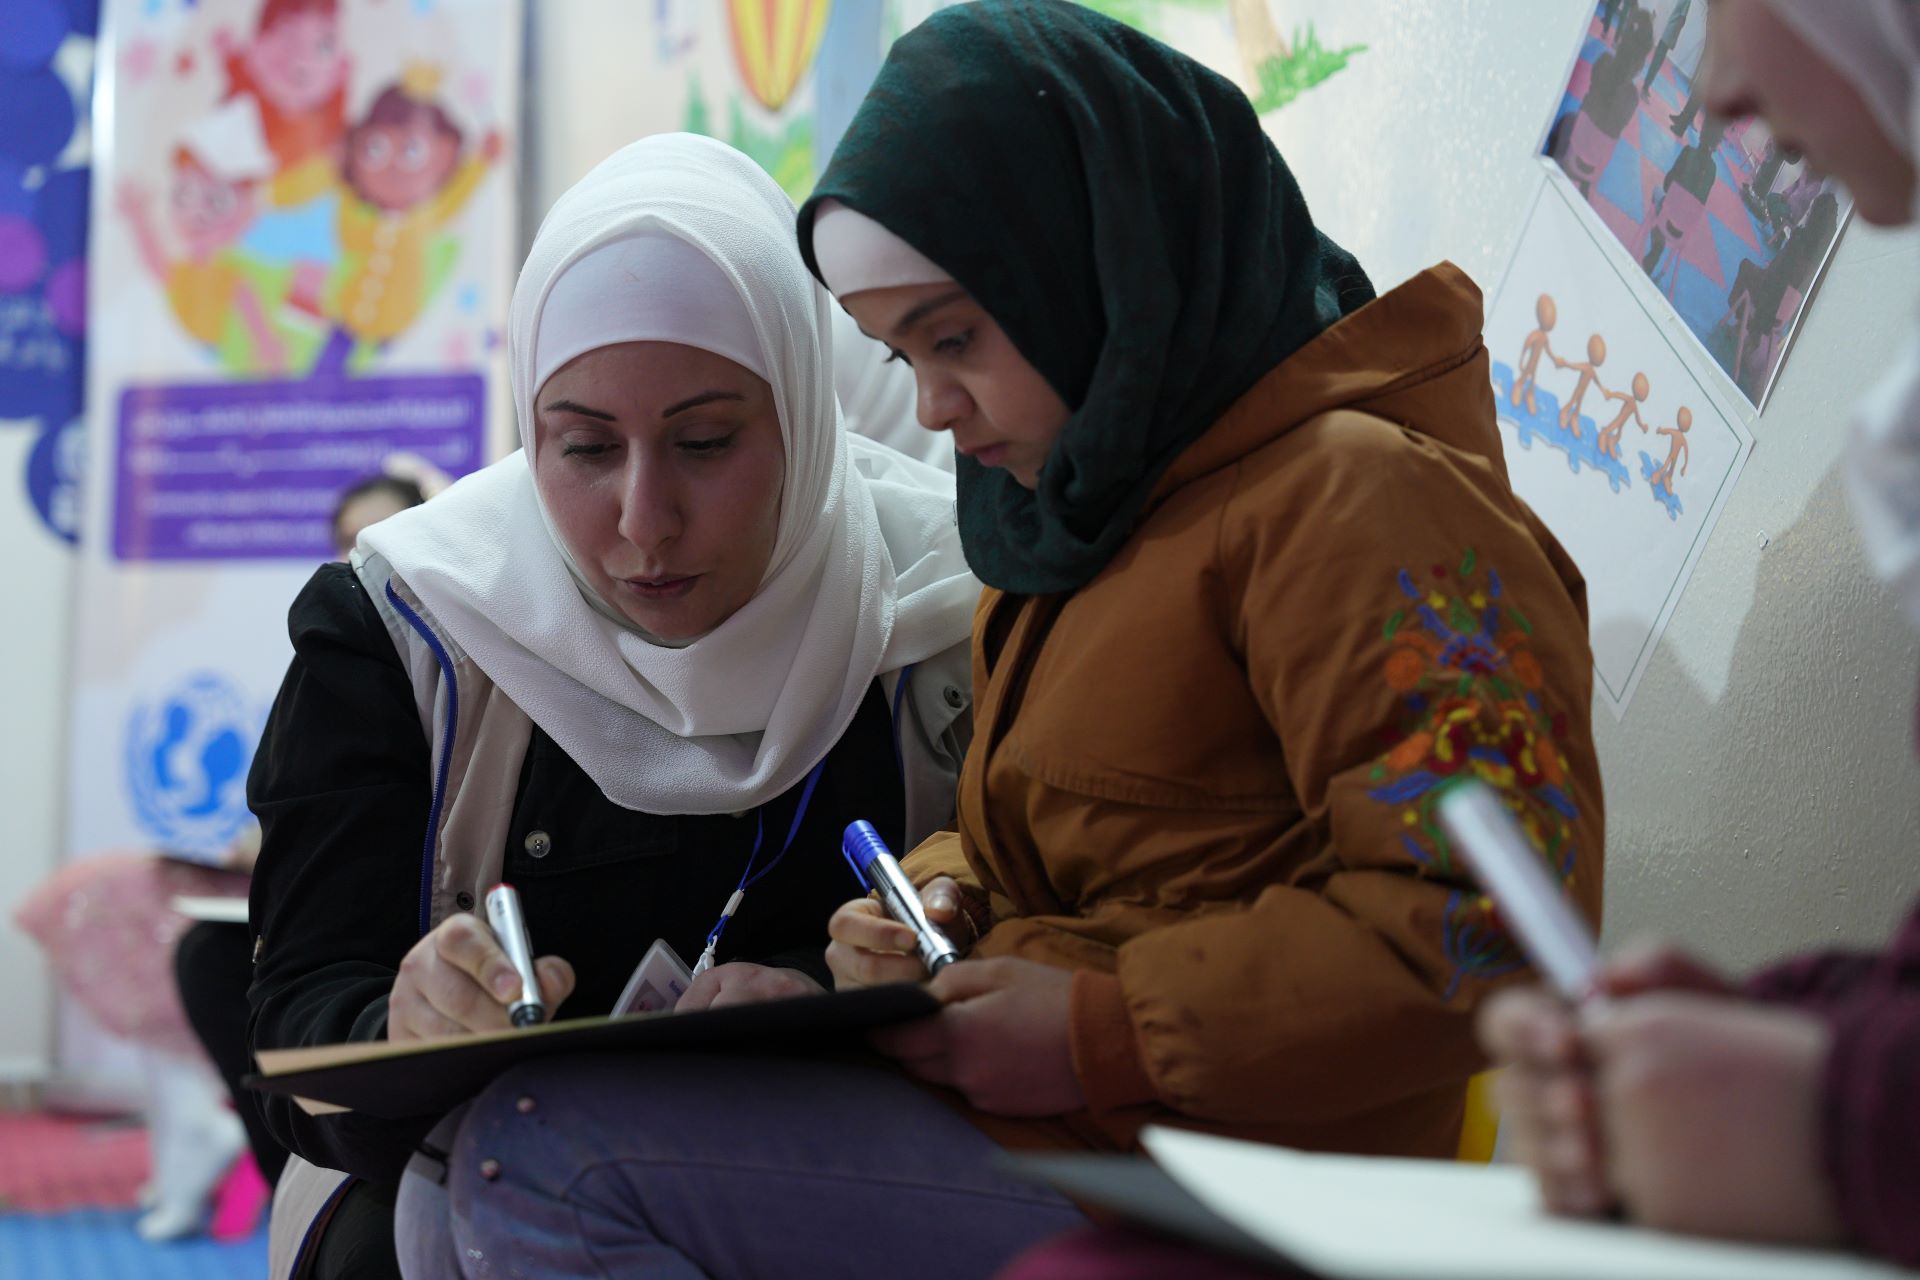 Das Bild zeigt die Kinderschutzbeauftragte Sana Abdulatif neben einem Mädchen. Beide sitzen und halten einen Stift in der Hand. Sana schreibt auf ein Blatt Papier, sie scheint dem Mädchen etwas zu erklären.